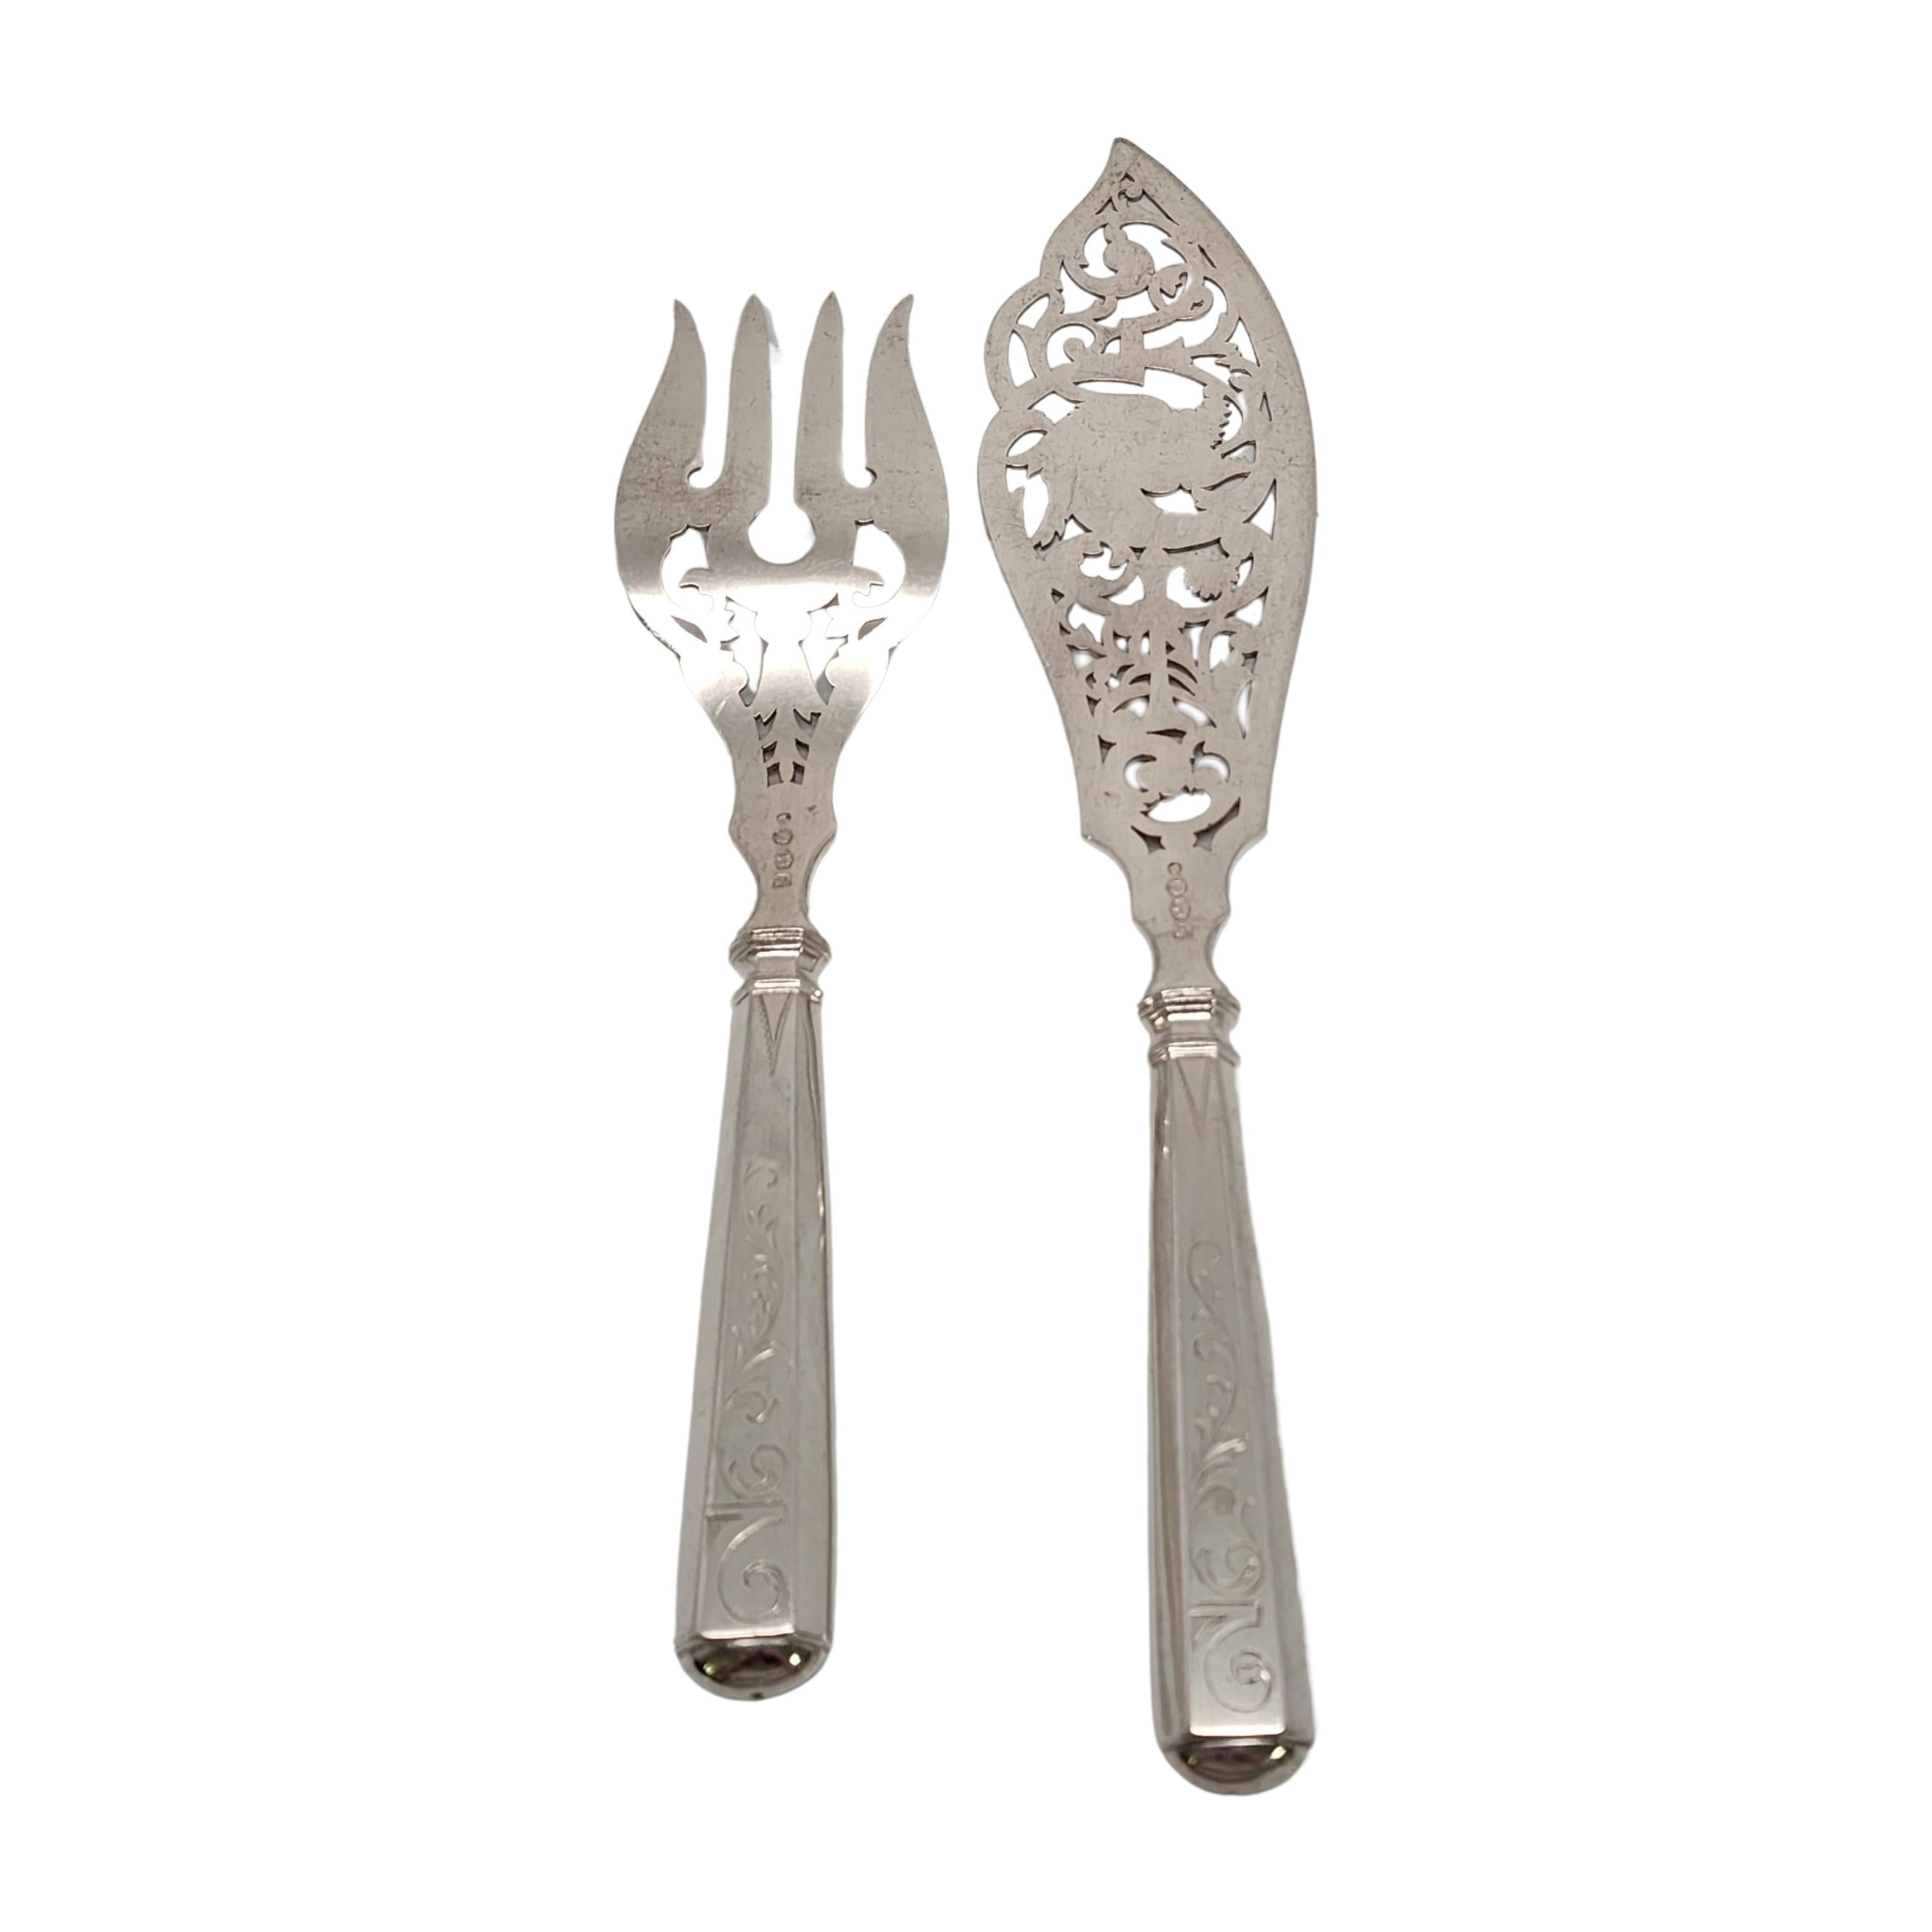 Antico set di forchette e coltelli da pesce in argento 833 di KA van Kempen, circa 1887.

Nessun monogramma

Il set progettato da JM Van Kempen è splendidamente decorato con denti e lama traforati e incisi. I manici sono caratterizzati da disegni a